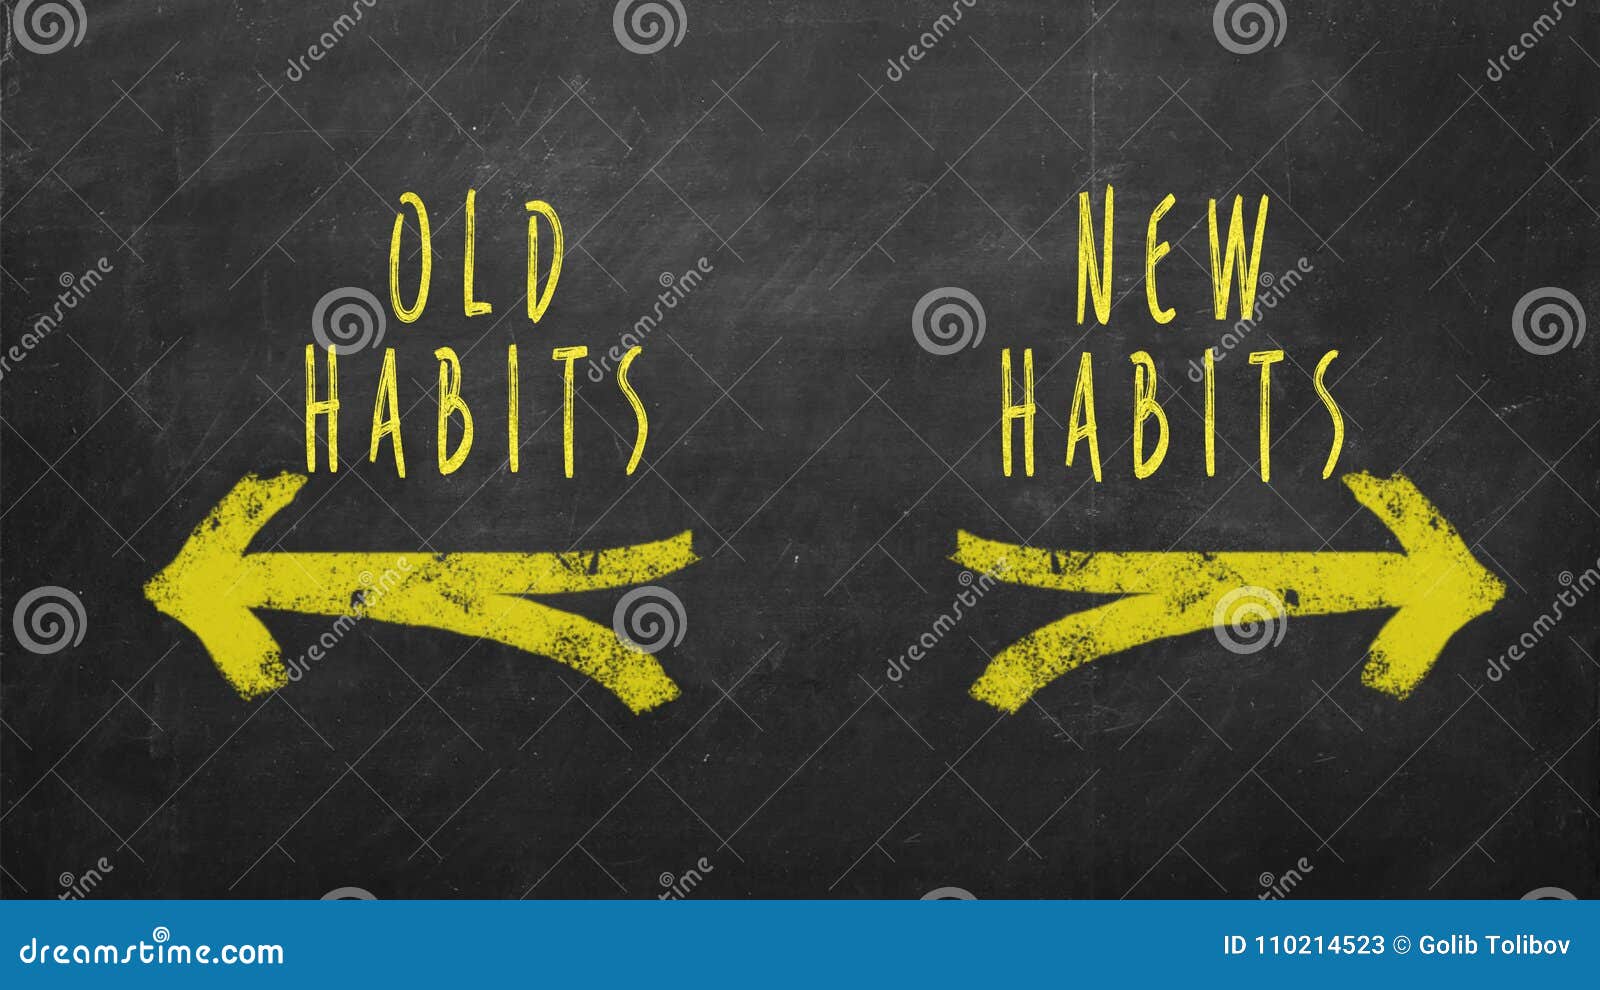 new habits vs old habits